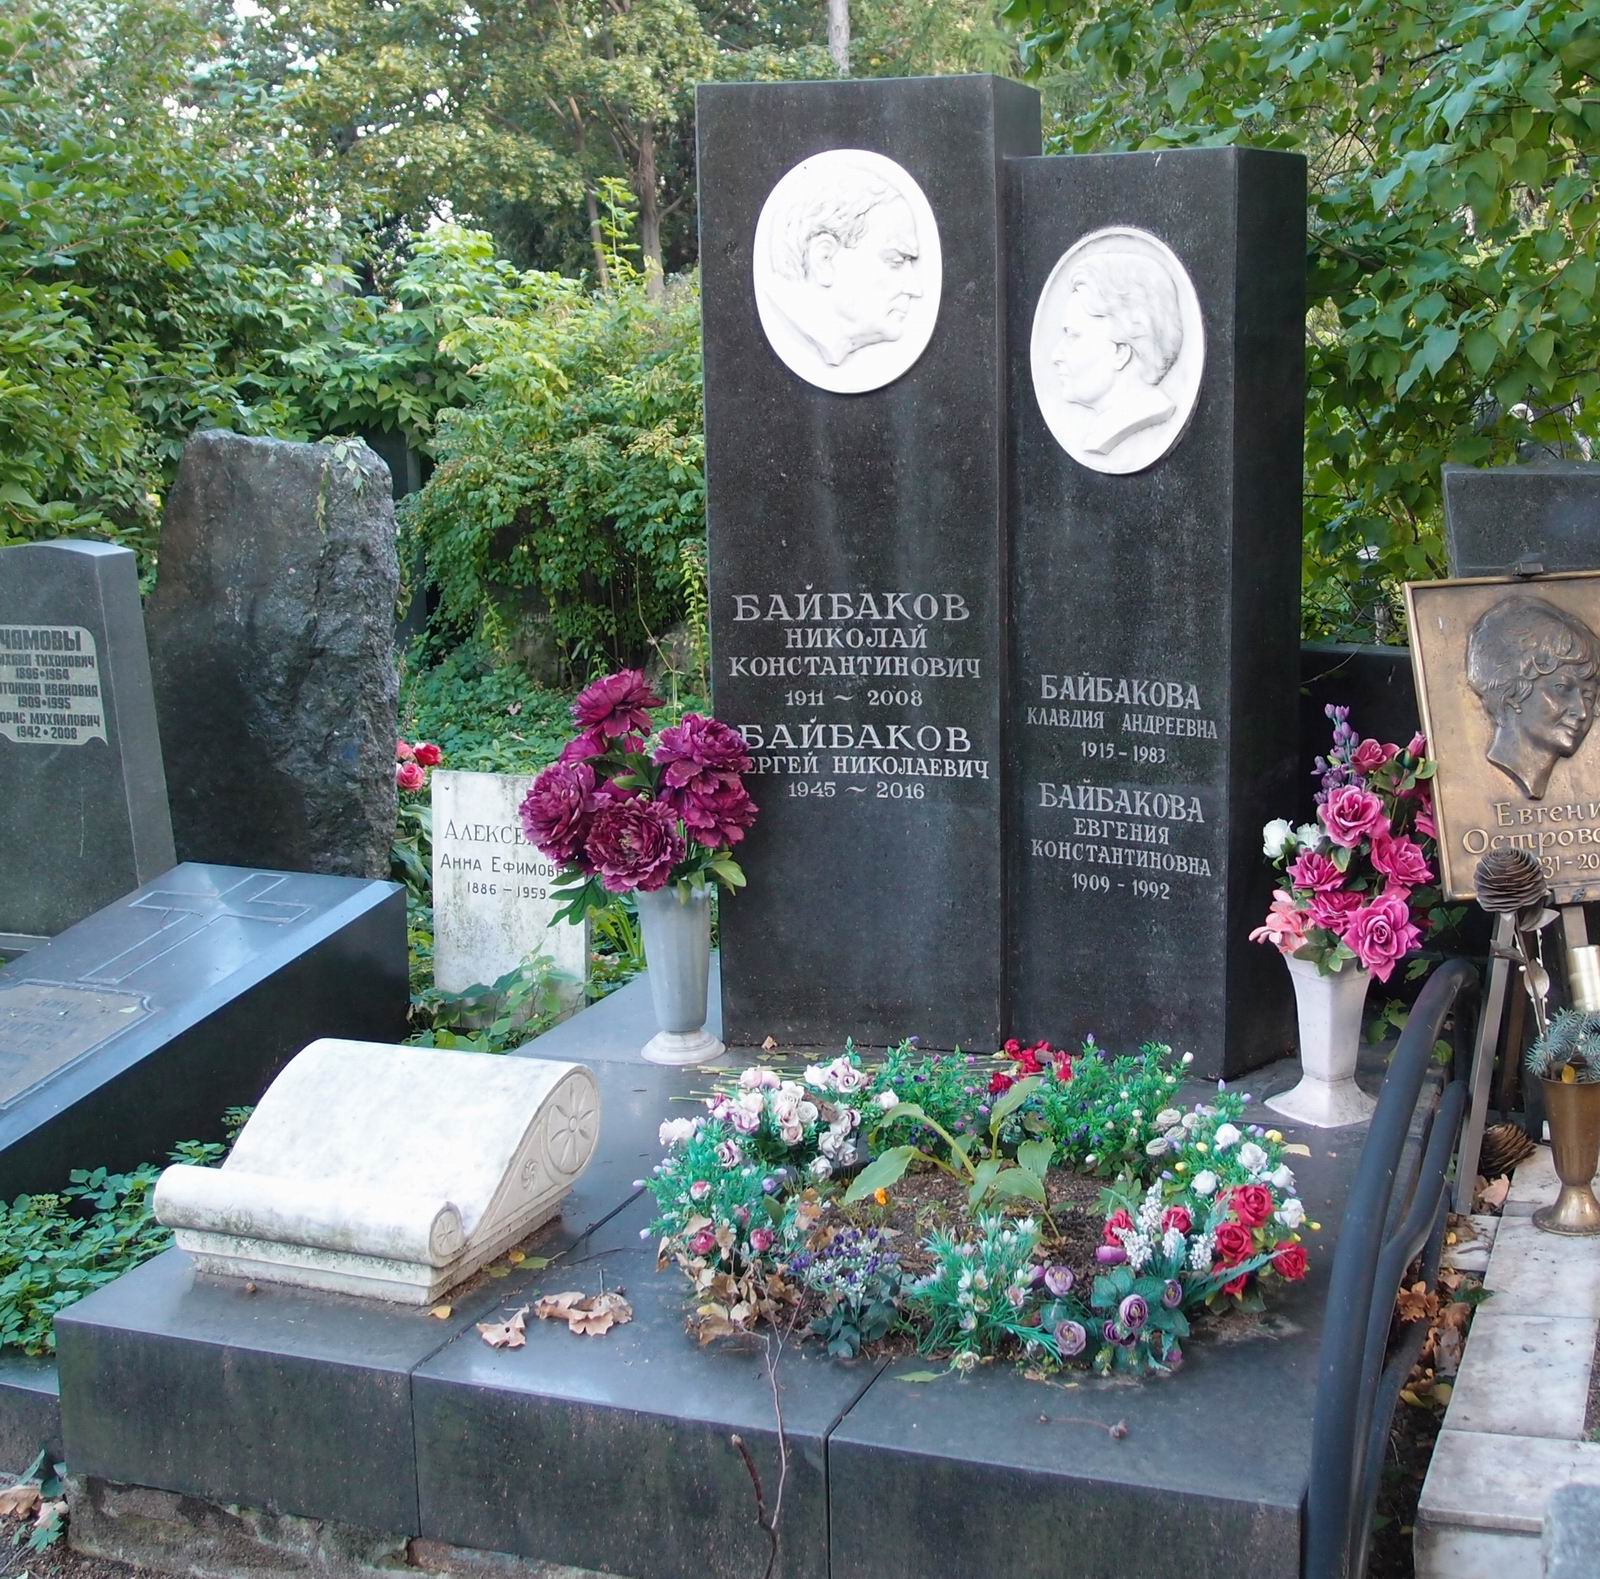 Памятник на могиле Байбакова Н.К. (1911–2008), на Новодевичьем кладбище (3–10–7). Нажмите левую кнопку мыши чтобы увидеть фрагмент памятника.